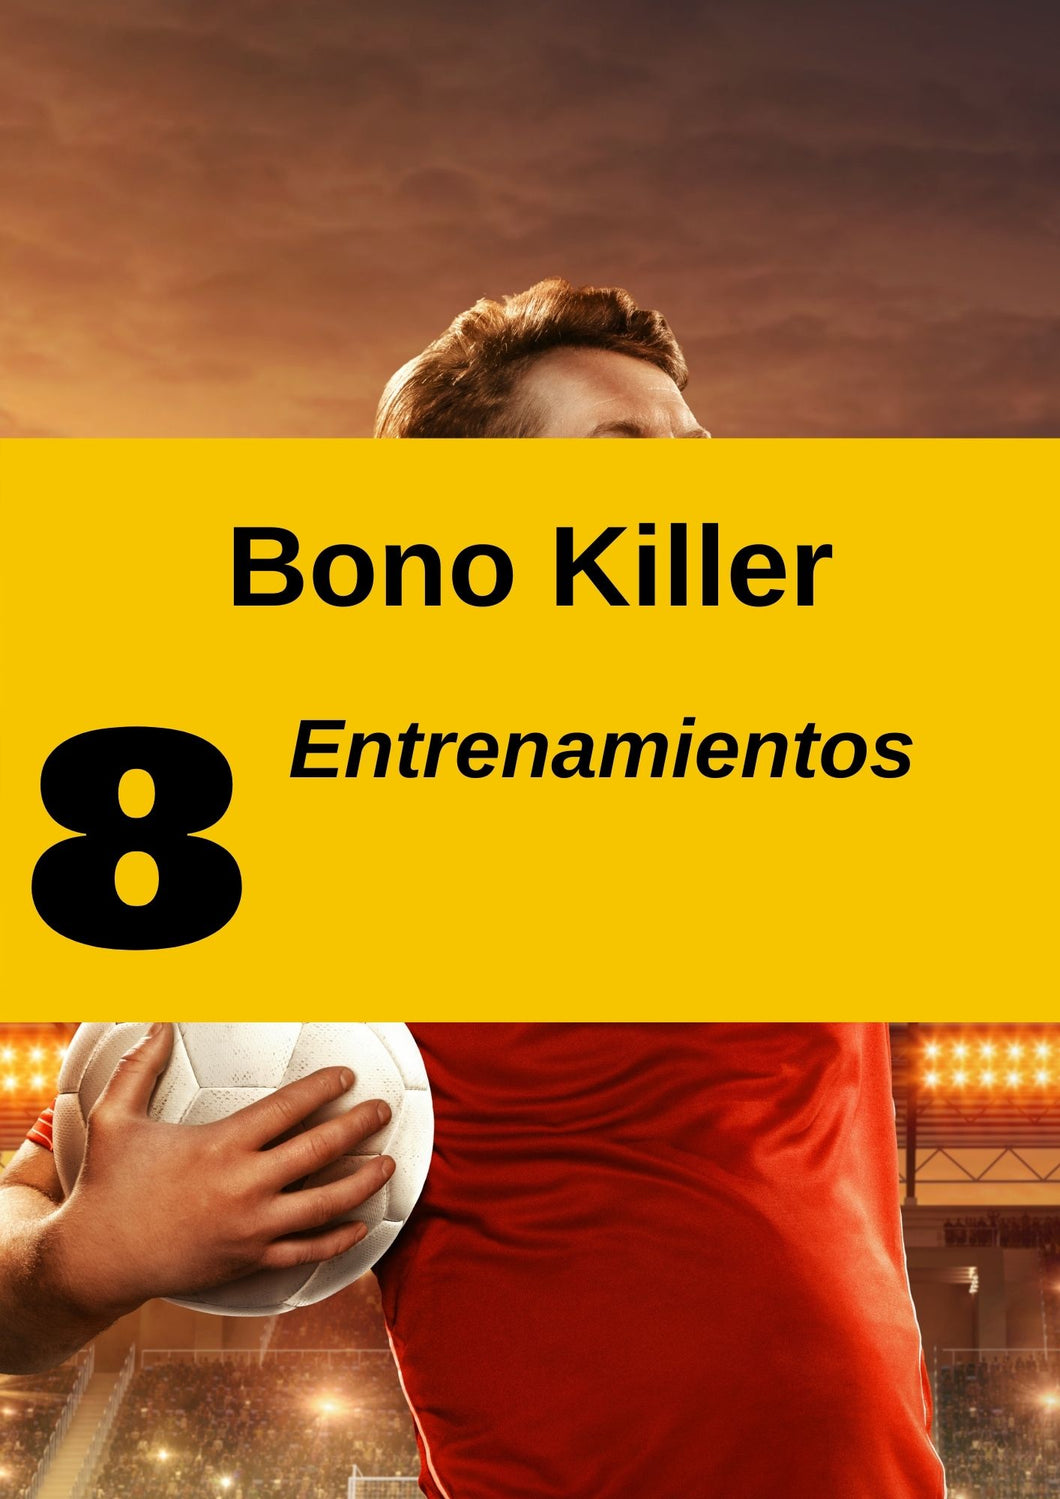 Bono Killer | Perfeccionamiento de desmarques y Controles orientados | Análisis de video